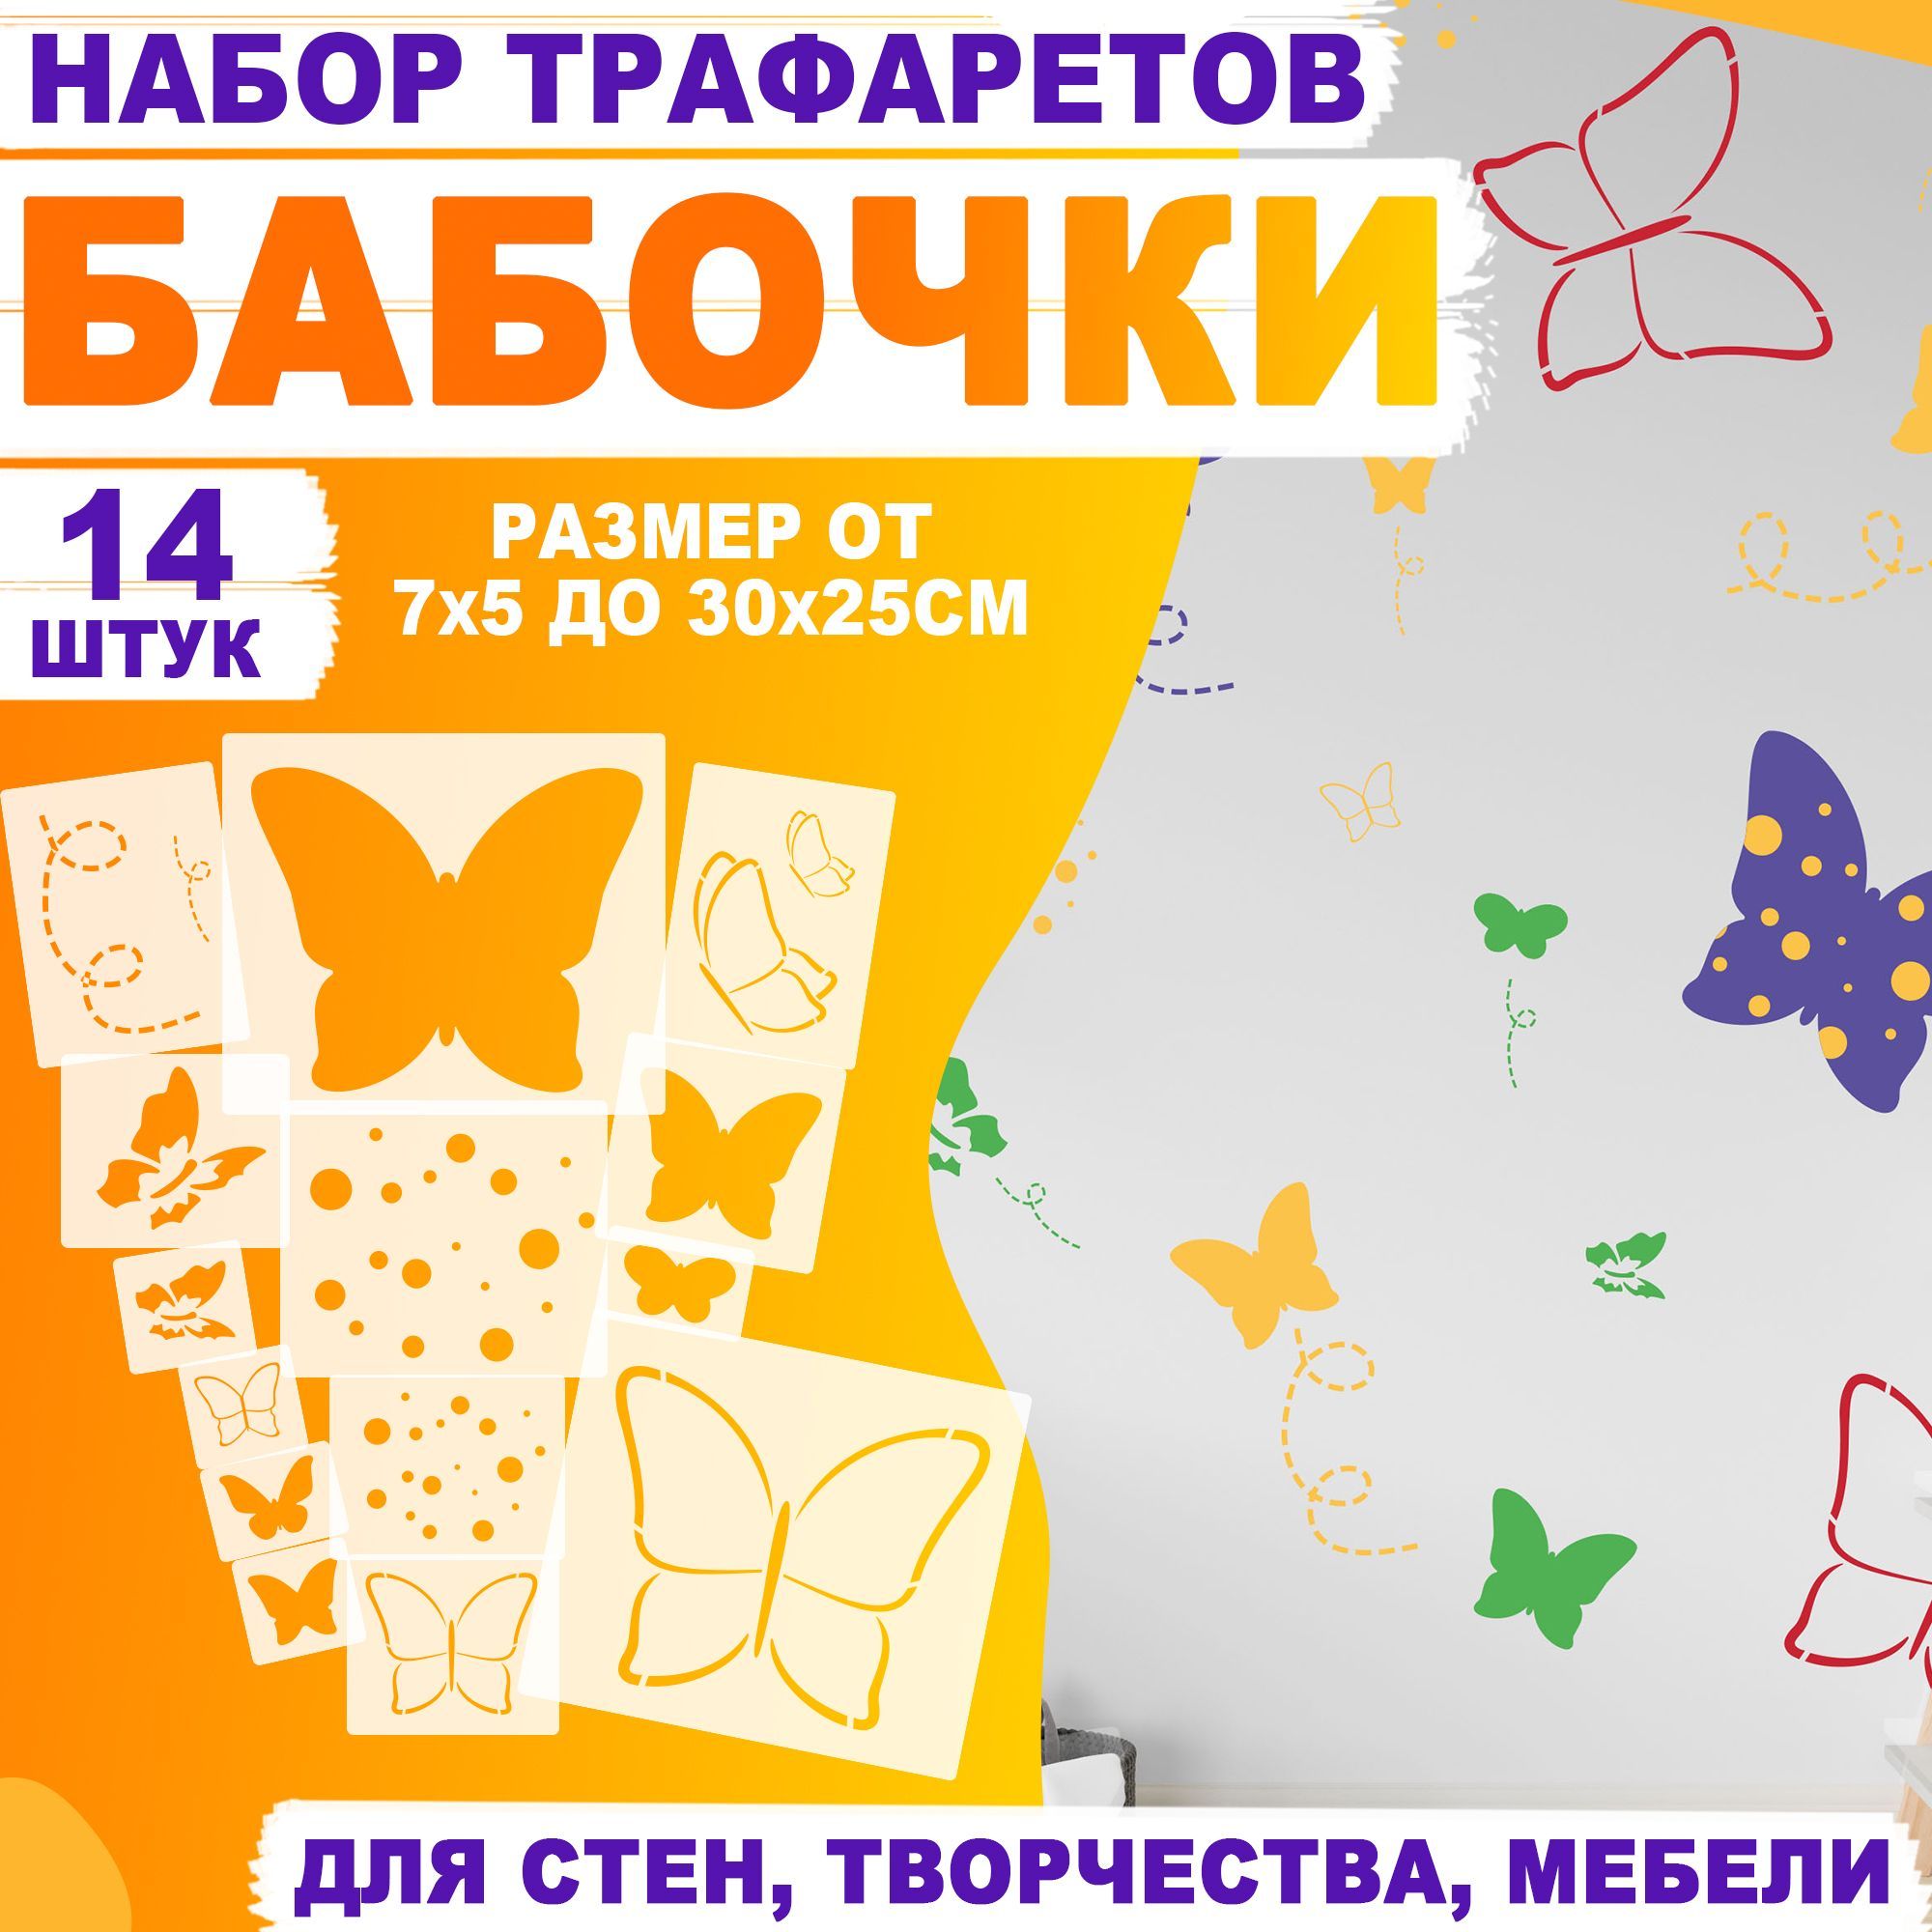 Бабочки на стену (75 фото) - идеи декора своими руками - prachka-mira.ru